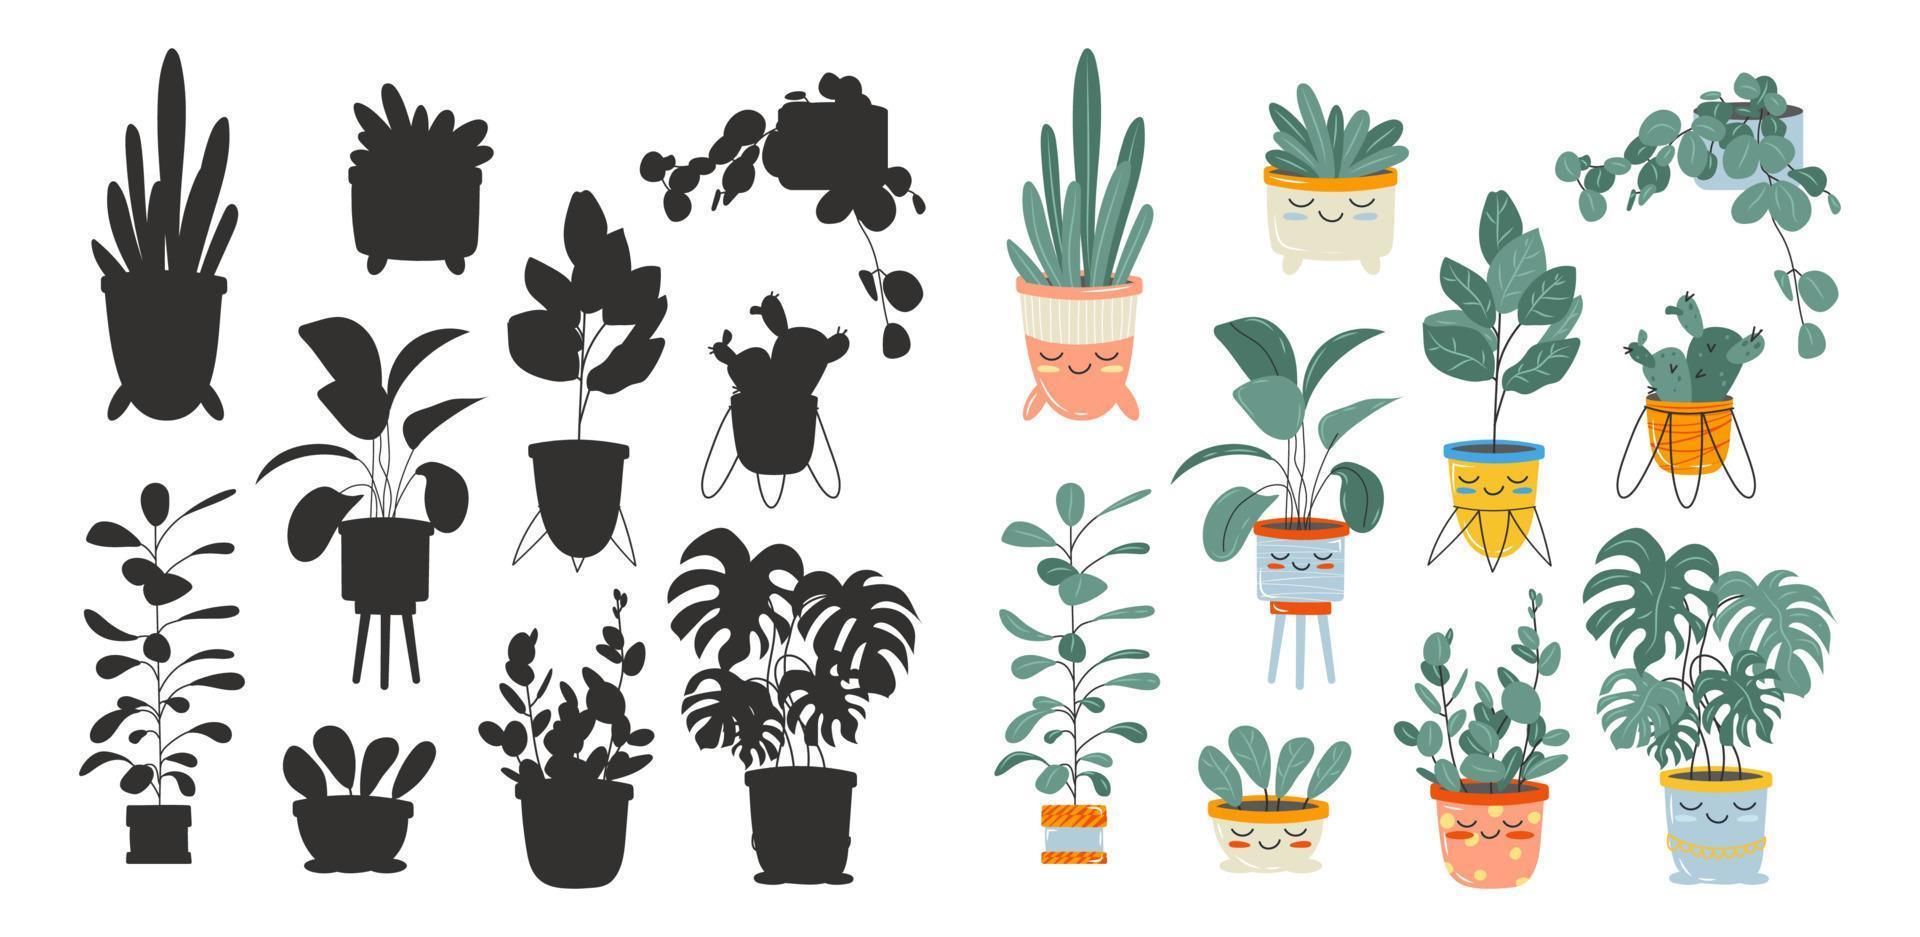 para niños educativo juego, encontrar correcto sombra silueta. interior plantas y negro siluetas de flores linda kawaii plantas. vector valores ilustración aislado en blanco antecedentes.